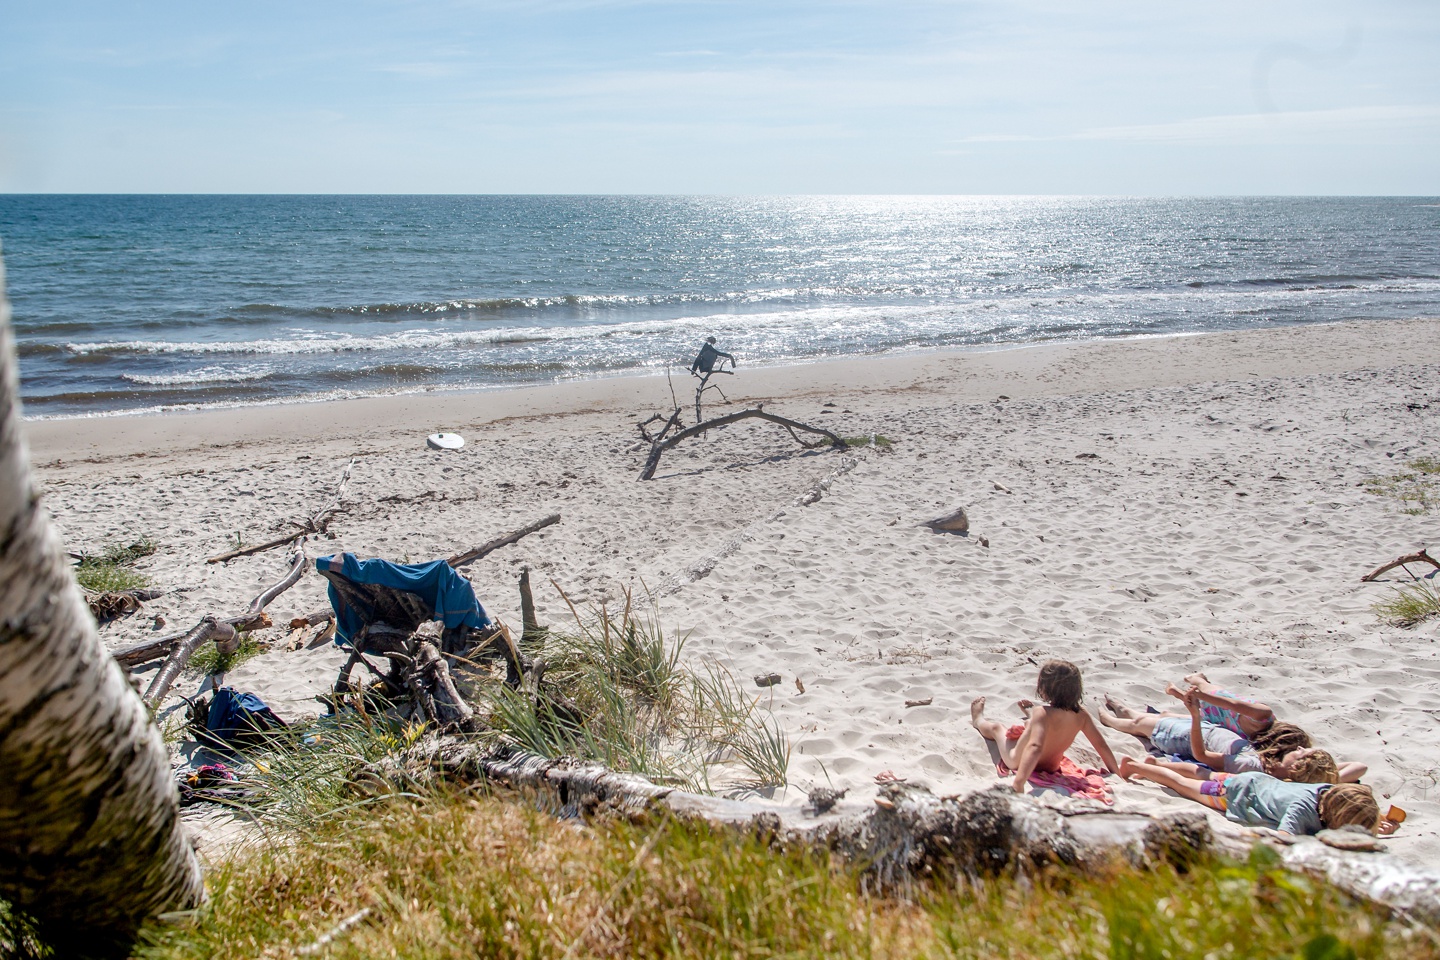 Unsere Familienzeit beim Camping auf der malerischen Insel Bornholm.